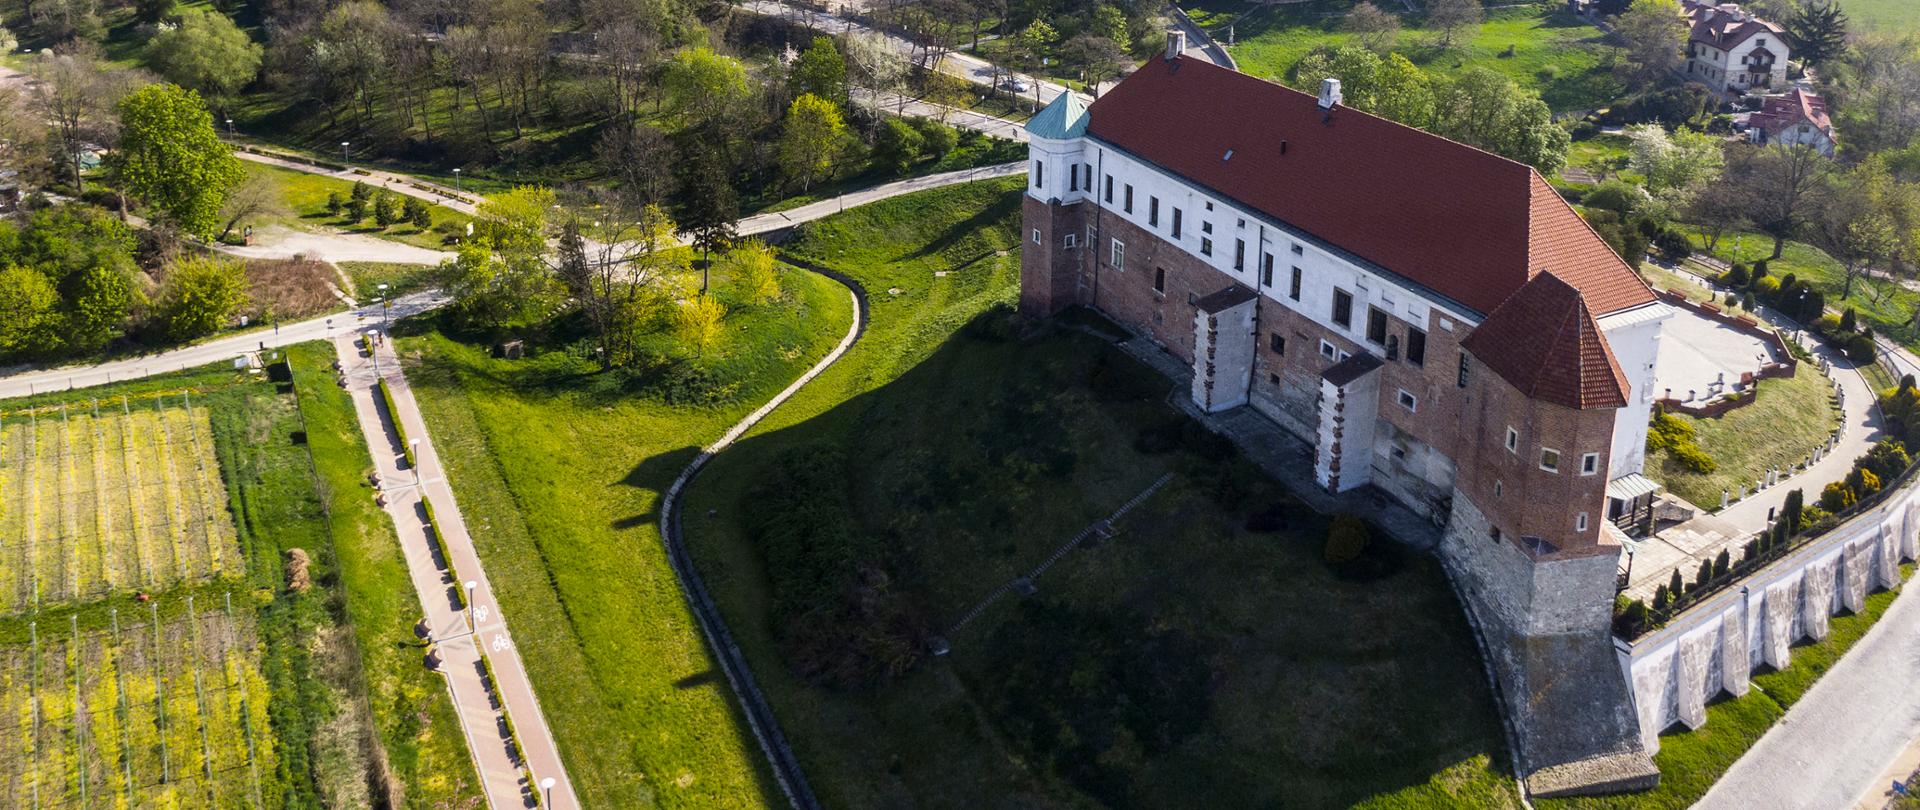 Zamek Królewski w Sandomierzu, fot. Tomasz Chmiel Urząd Miejski w Sandomierzu